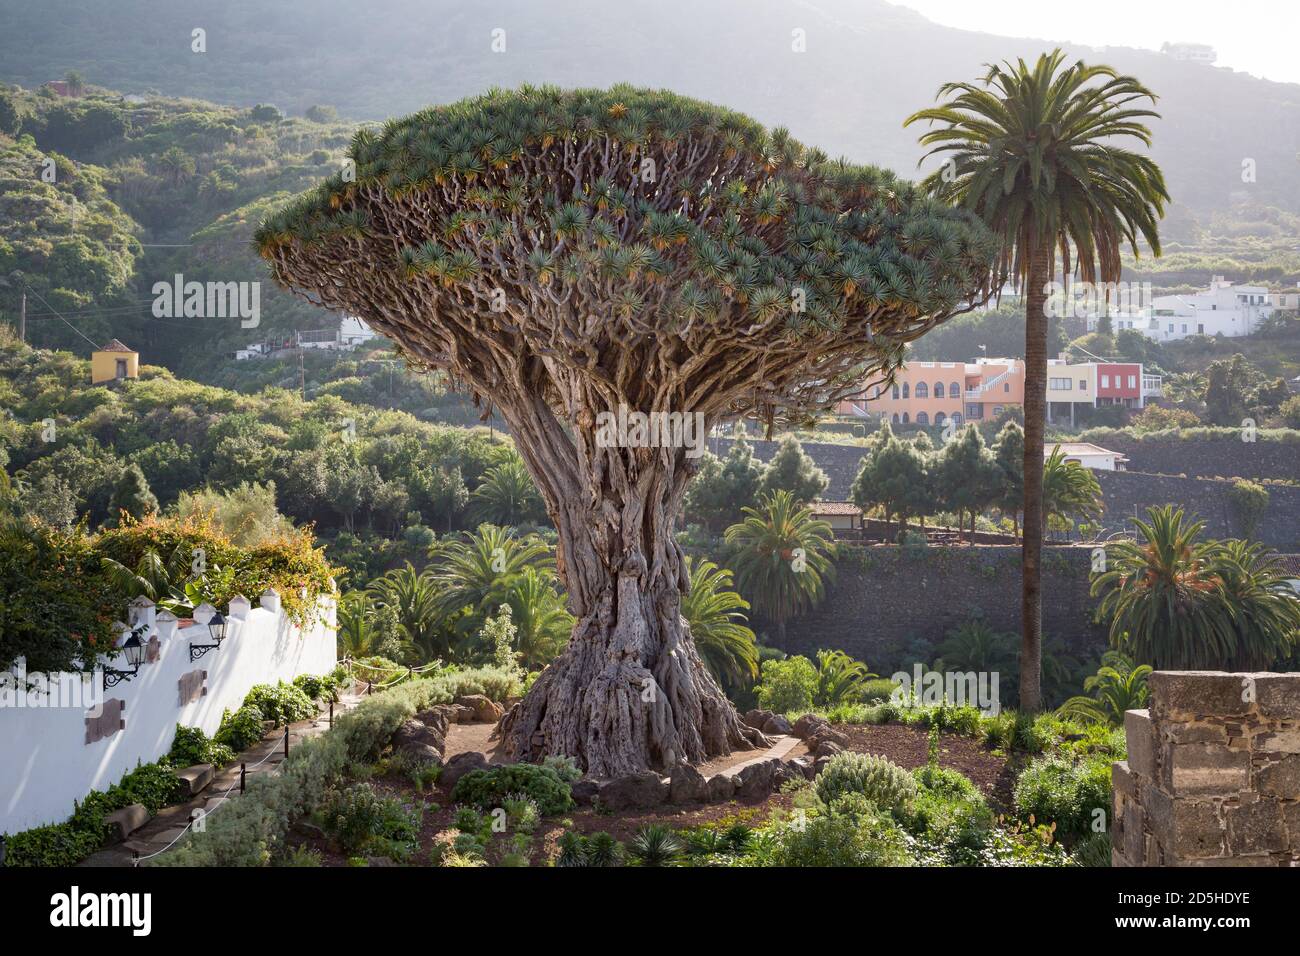 TENERIFE, SPAIN - March 11, 2015. Dragon tree El Drago, or Drago Milenario. Millennial Dragon Tree Park, Icod de los Vinos, Tenerife, Canary Islands Stock Photo